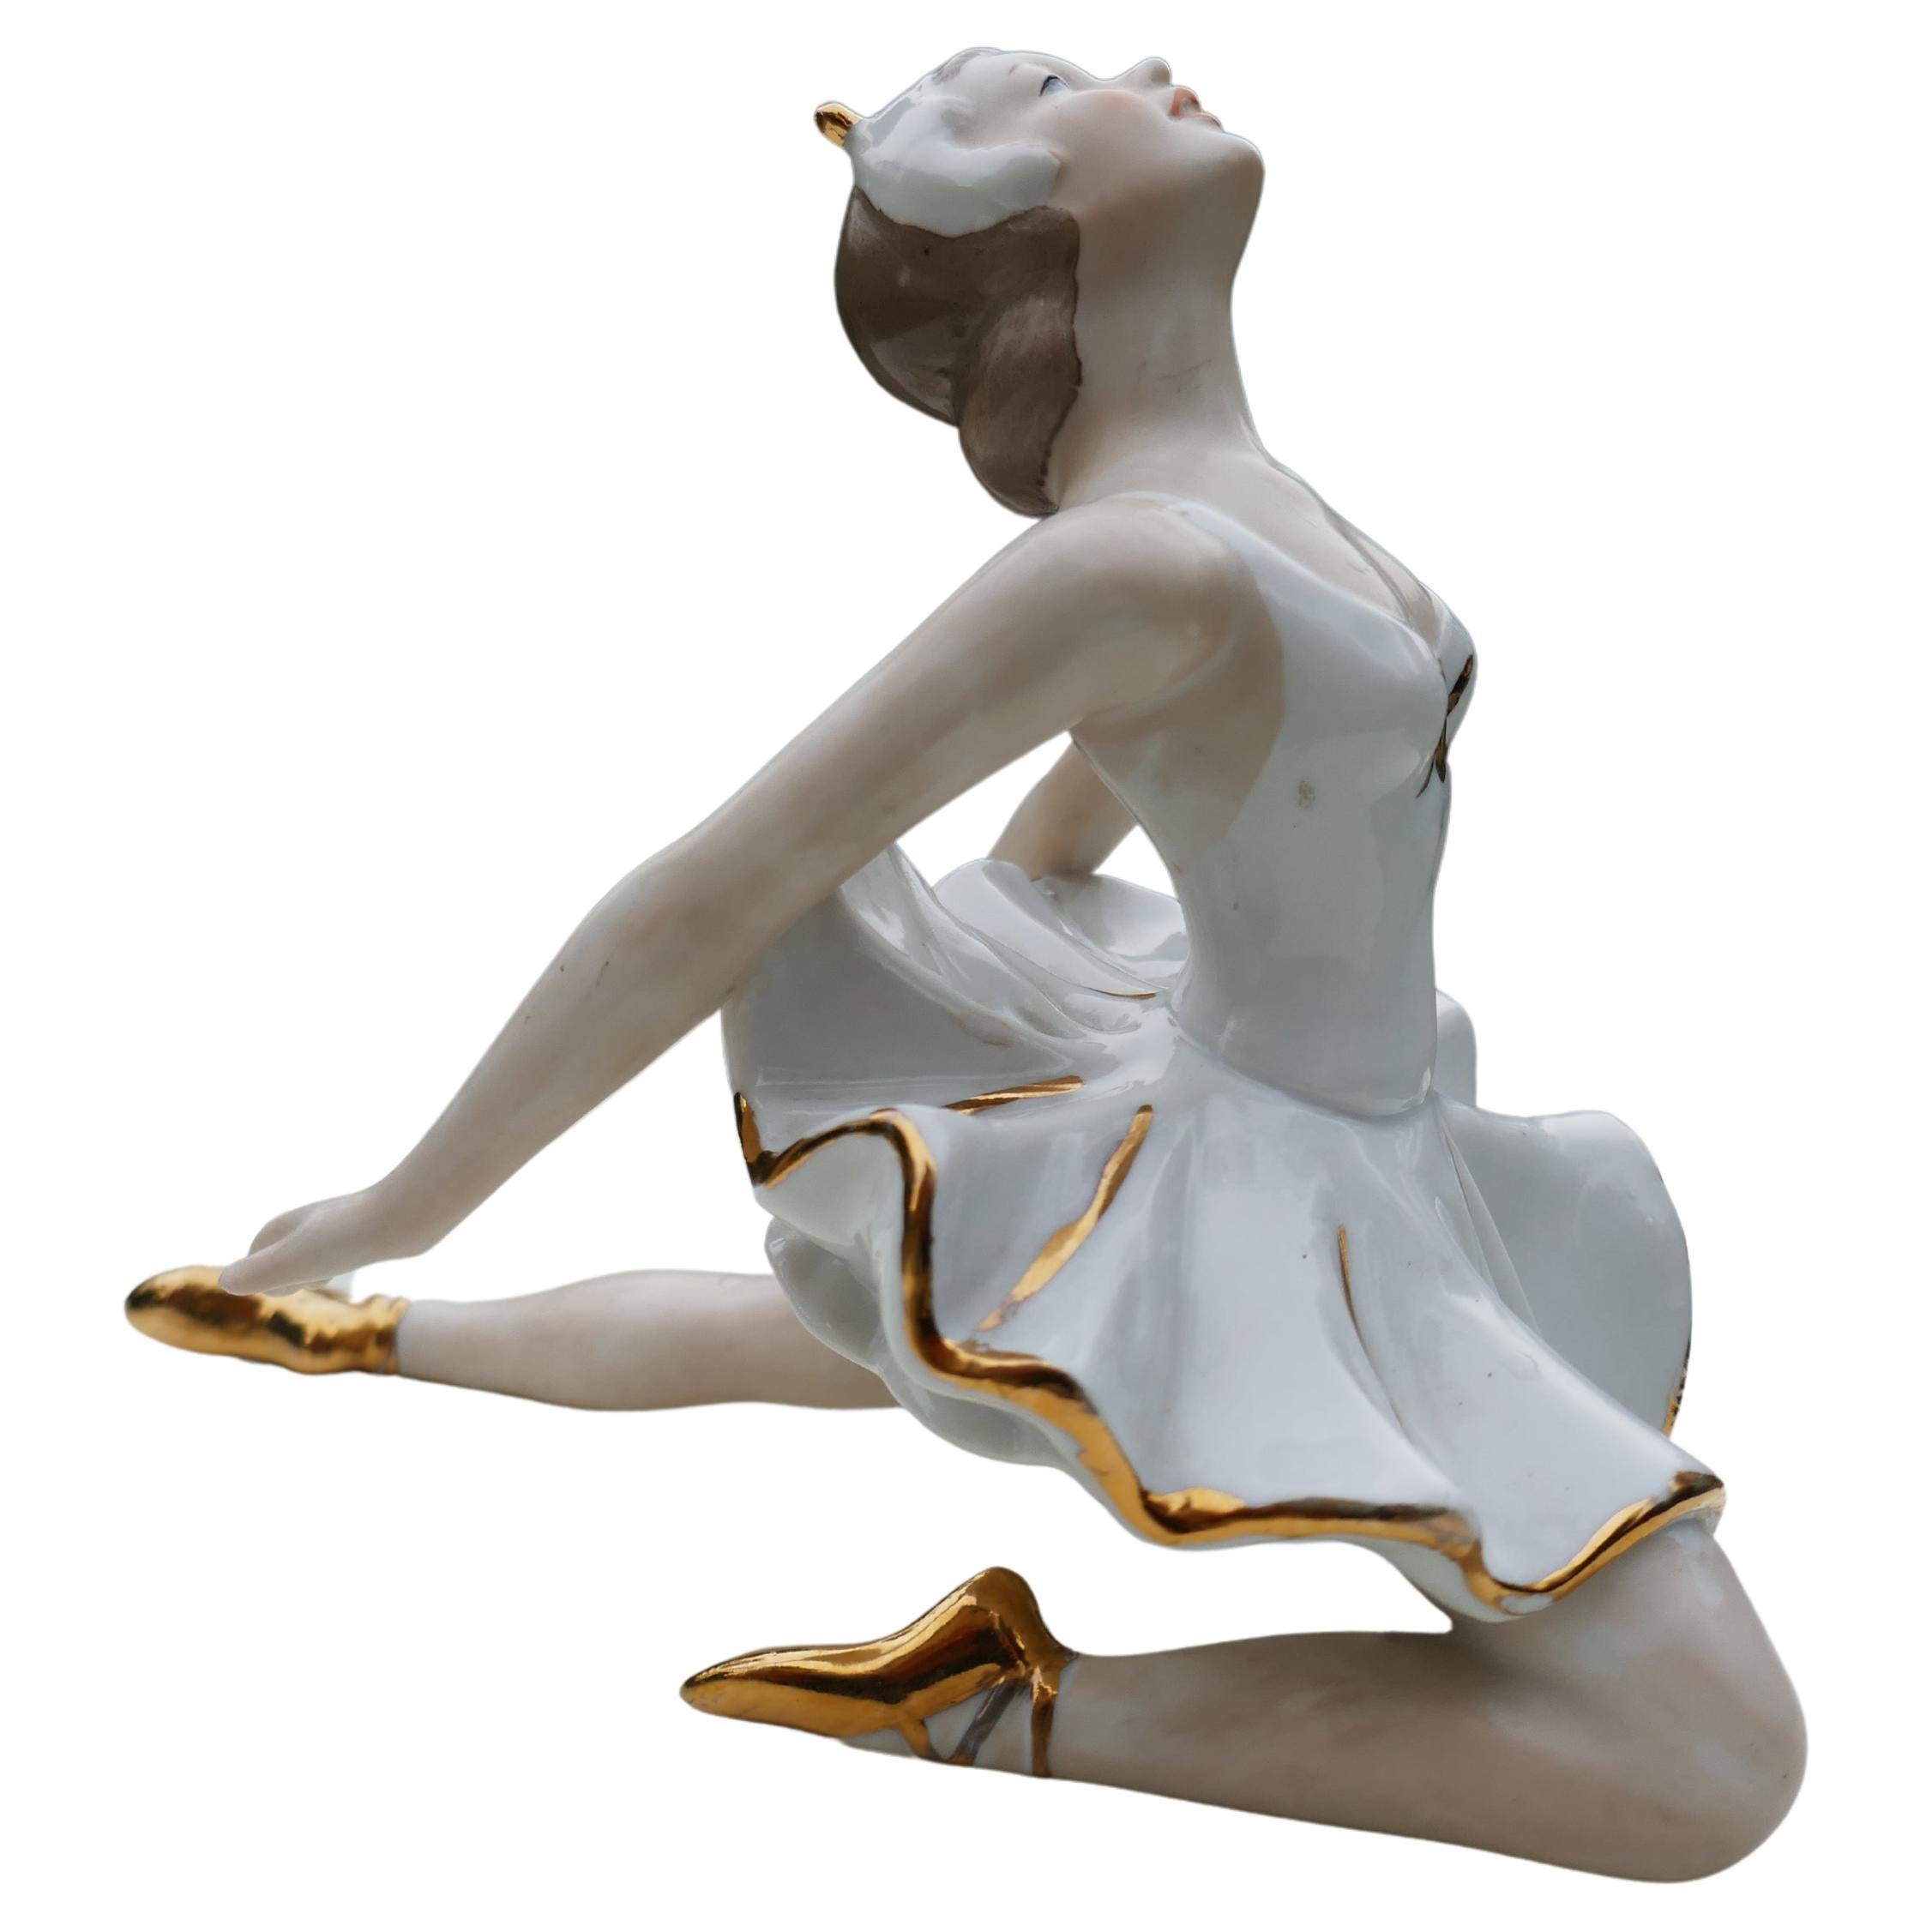 Ballerina tanzt die keramische Schwanensee-Romanze.
Mögliche Wallendorfer Produktion
Wie auf dem Foto zu sehen ist, fehlt ein Stück der Krone.
Dankeschön